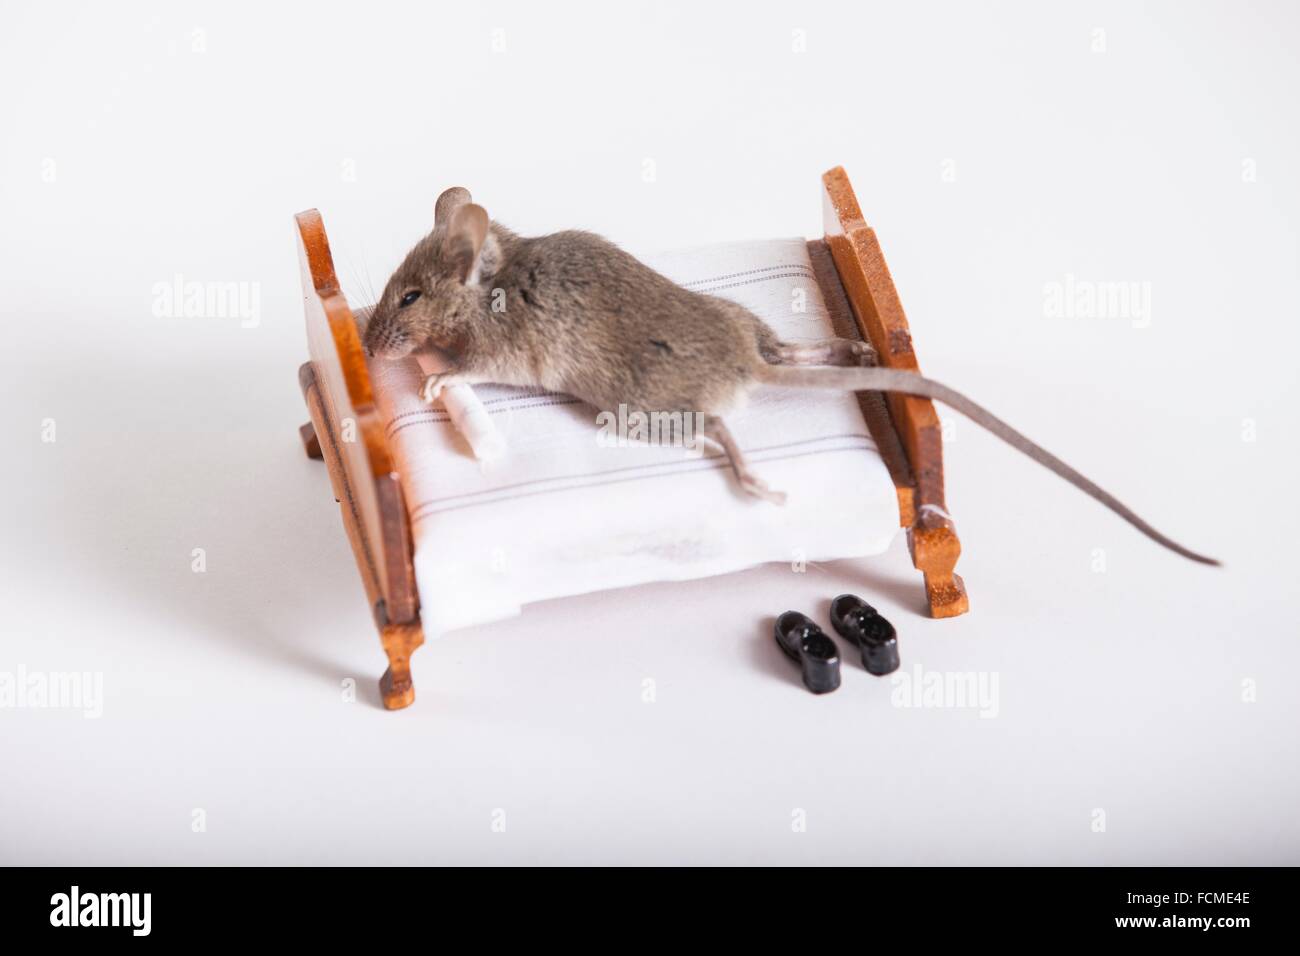 Maus auf einem Bett zu schlafen Stockfotografie - Alamy